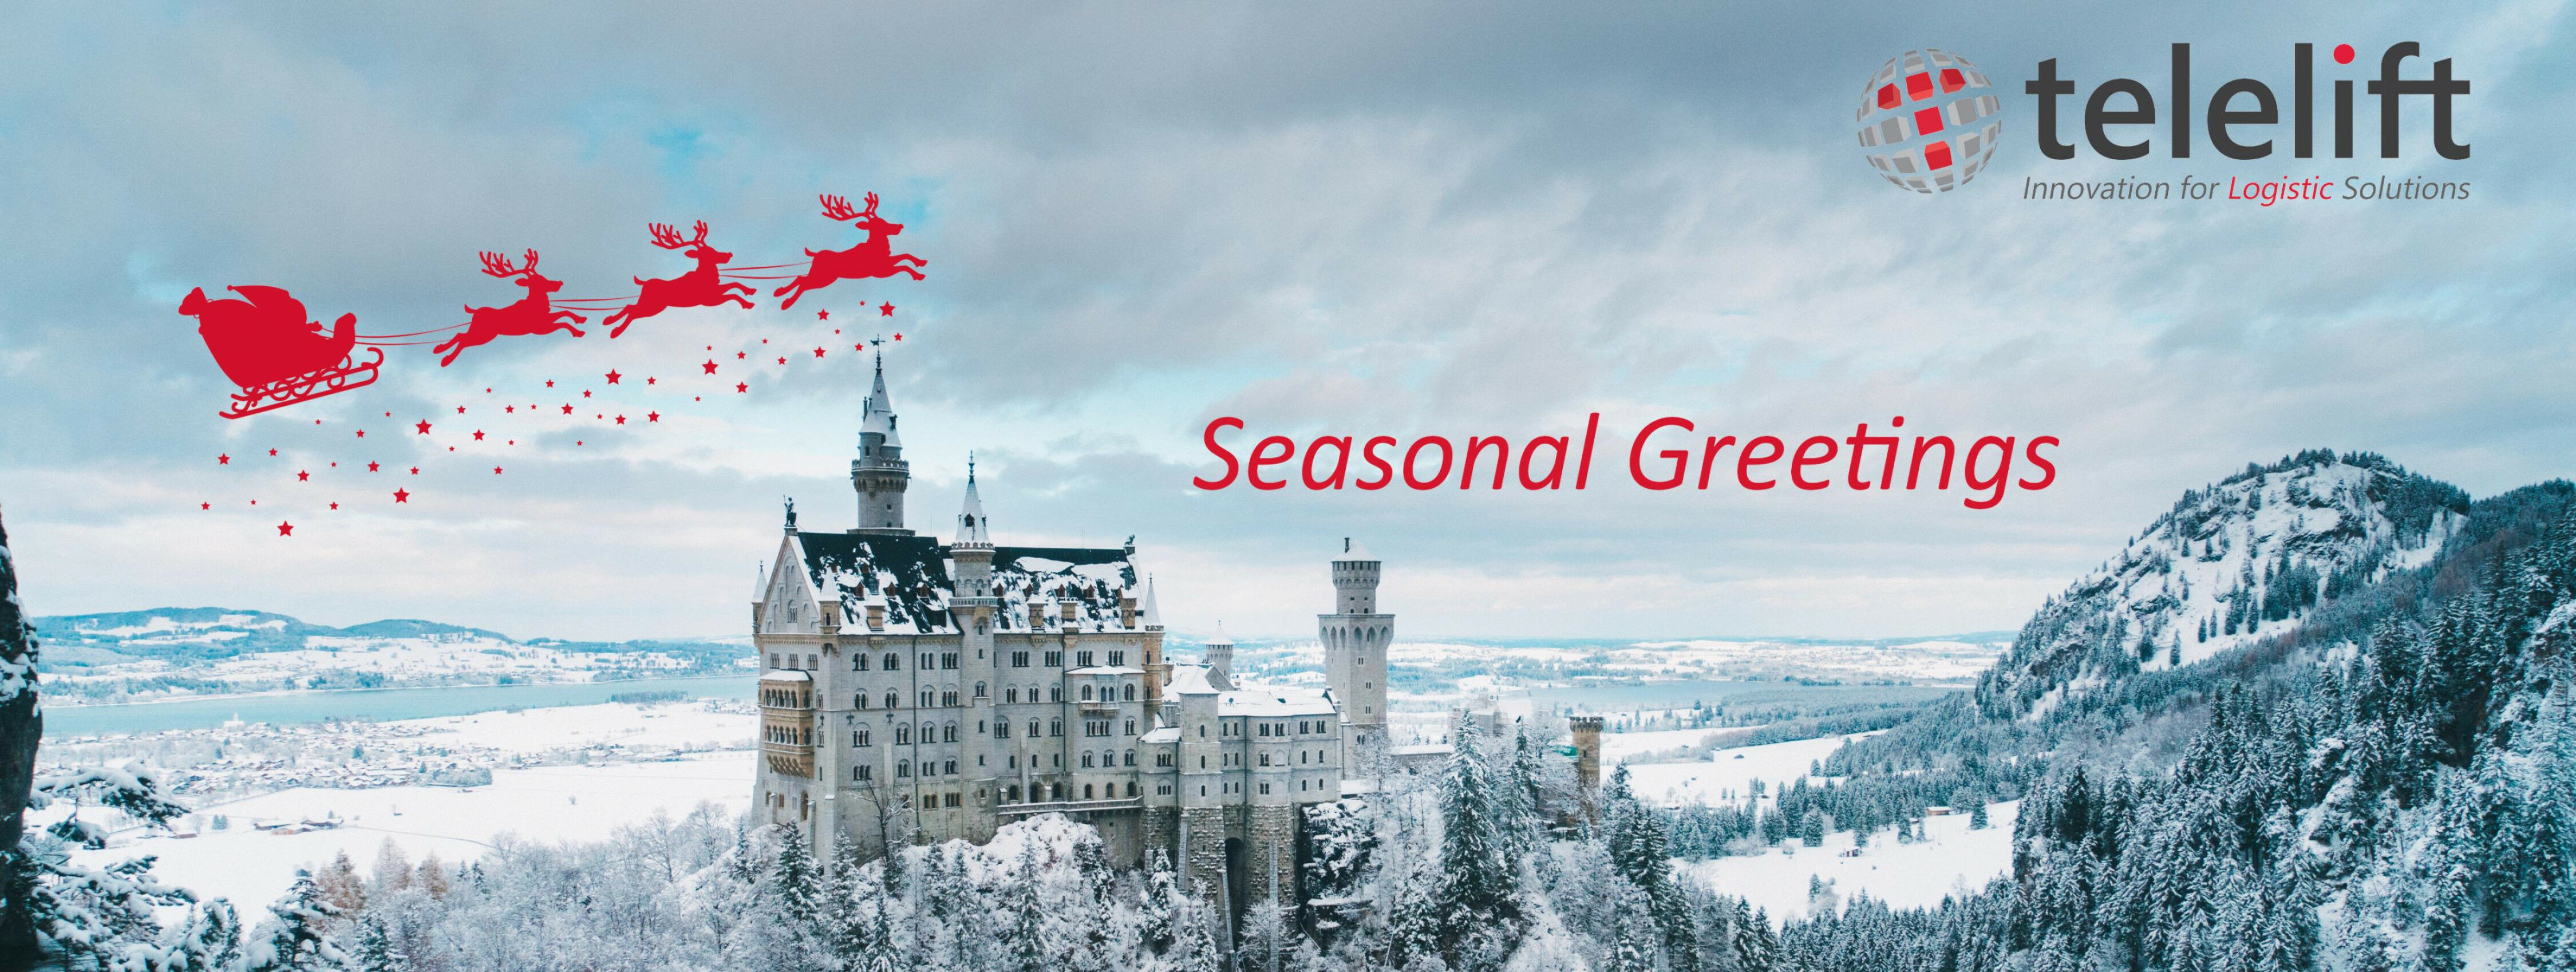 Seasonal greetings from Telelift